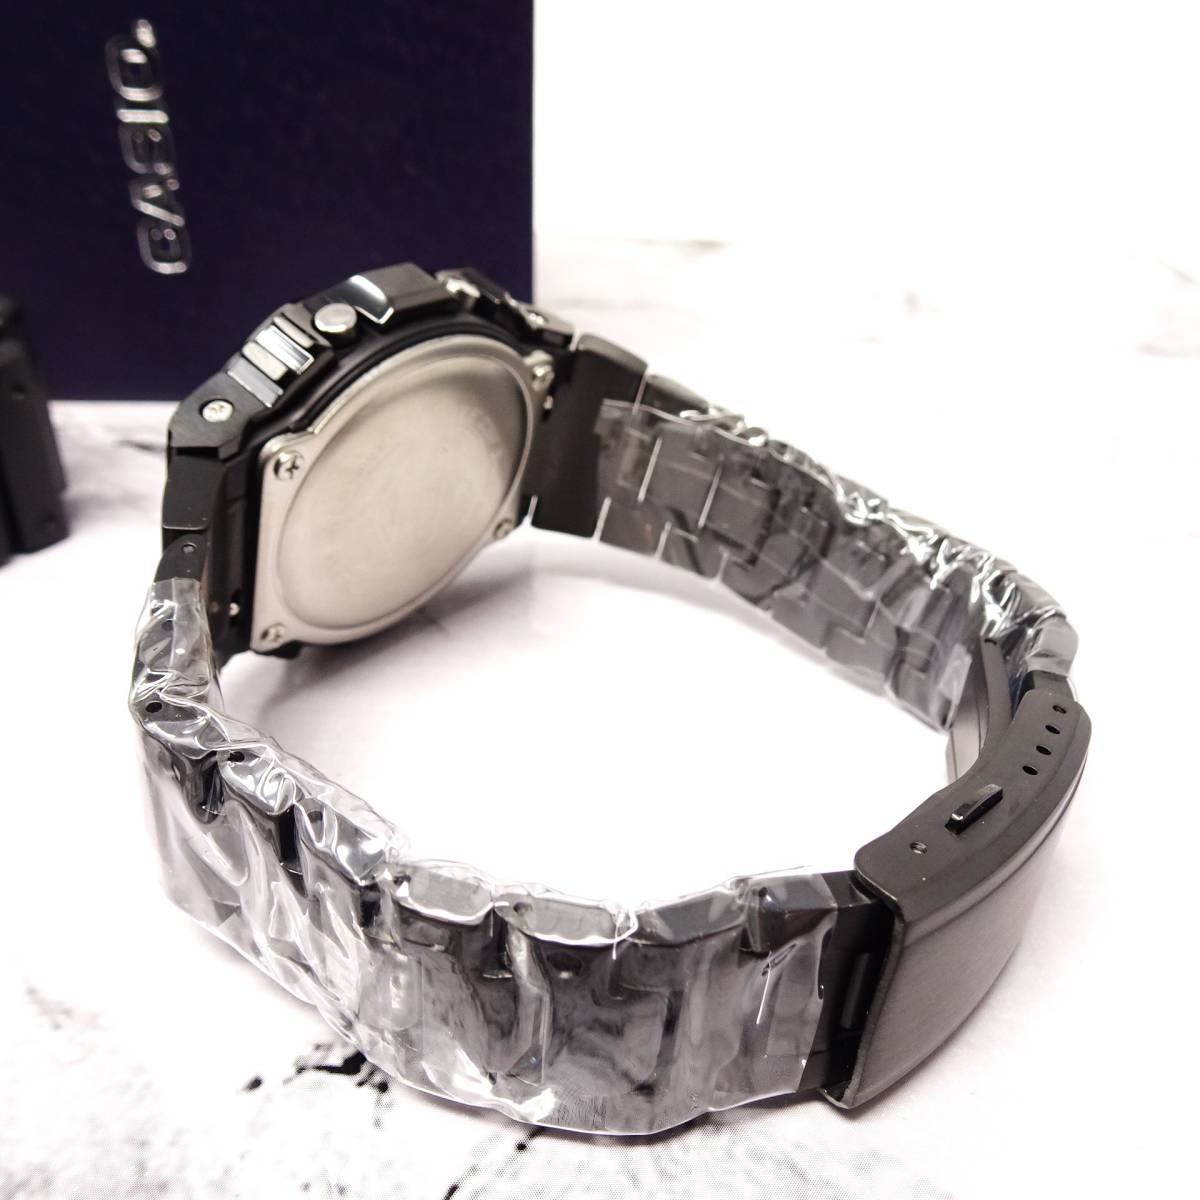 送料無料・新品・Gショックカスタム本体付きDW5600デジタル腕時計フルステンレス製ブラックベゼル＆ベルト・フルメタルモデル_画像8